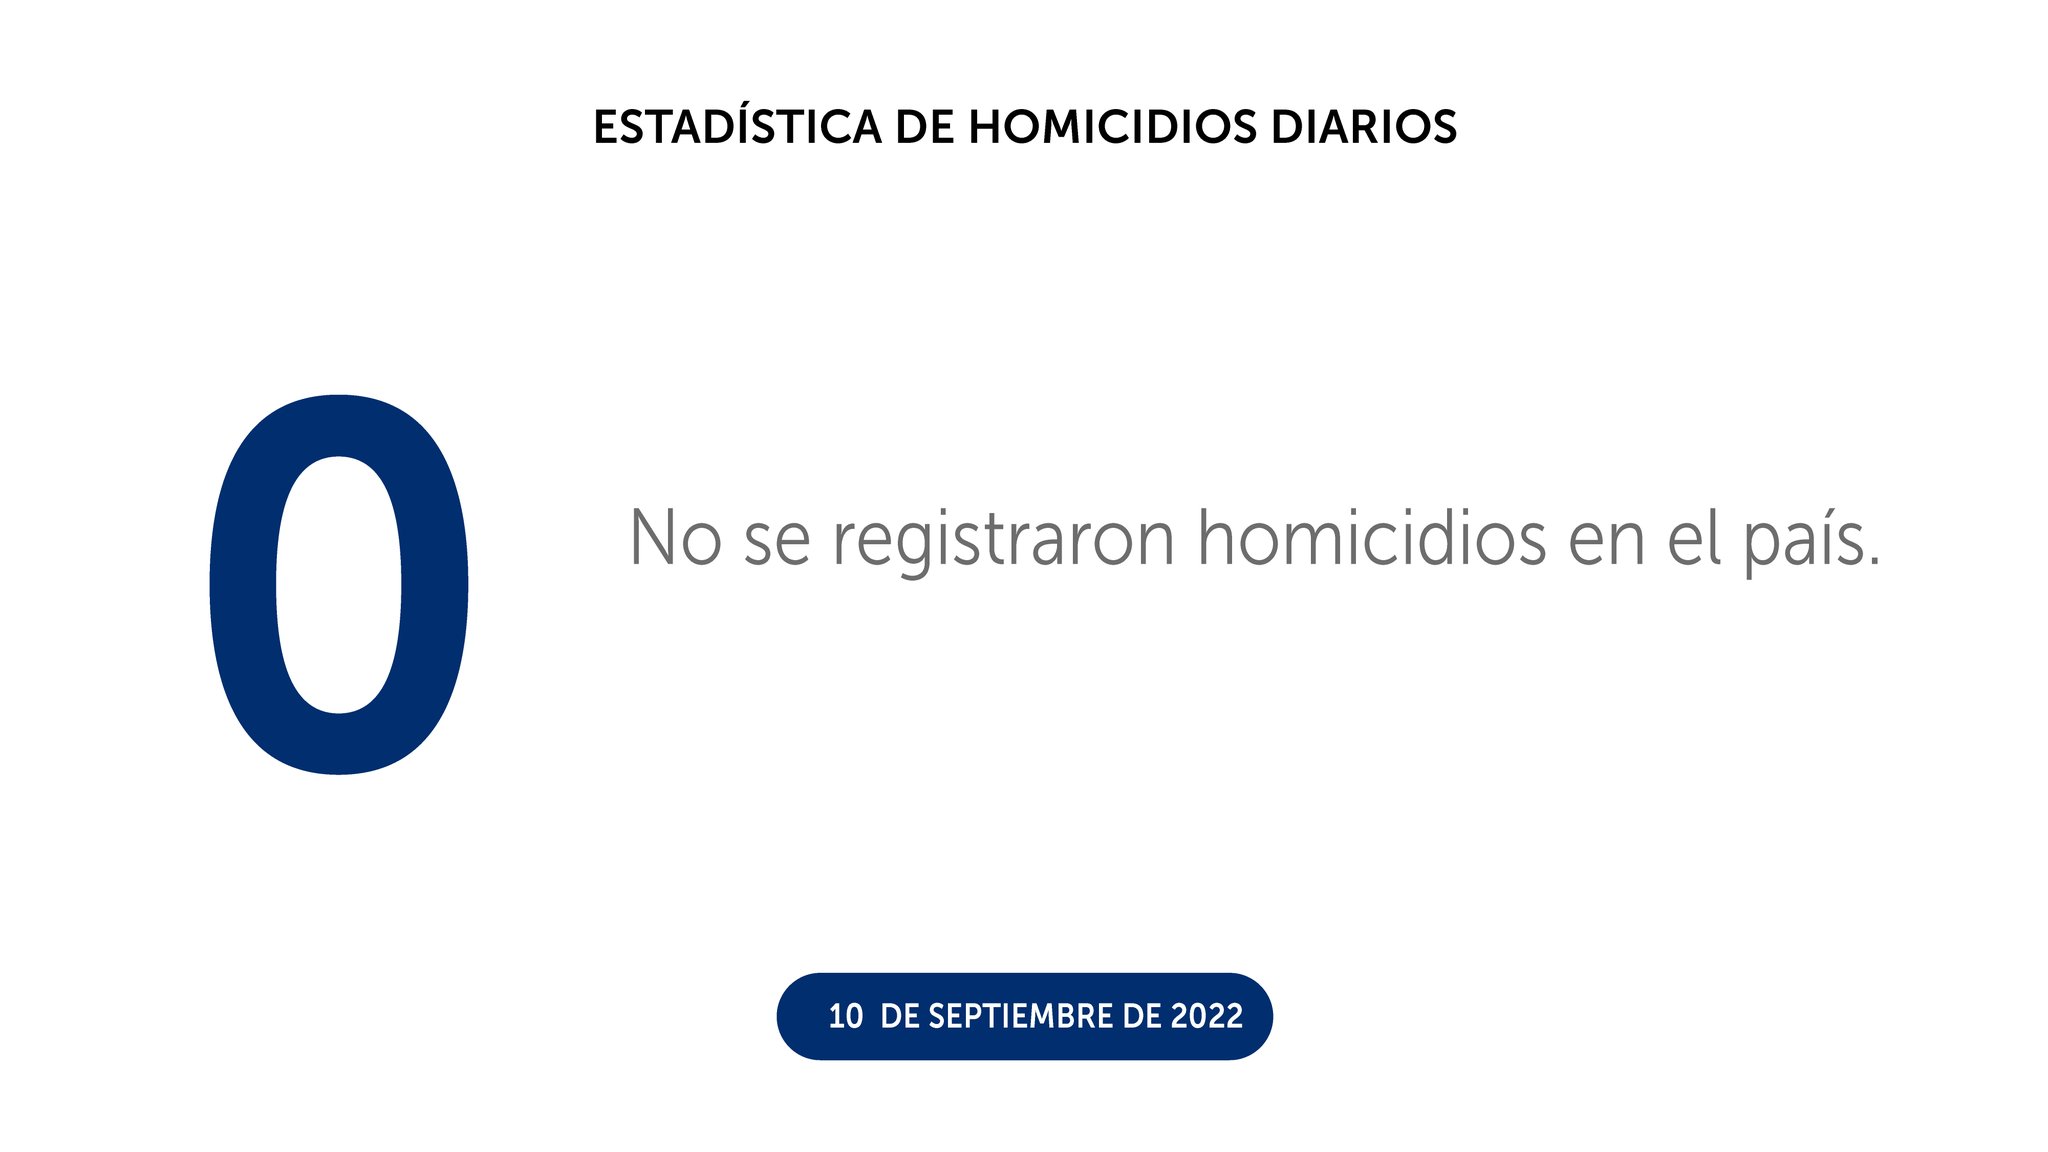 Un día más sin homicidios en El Salvador